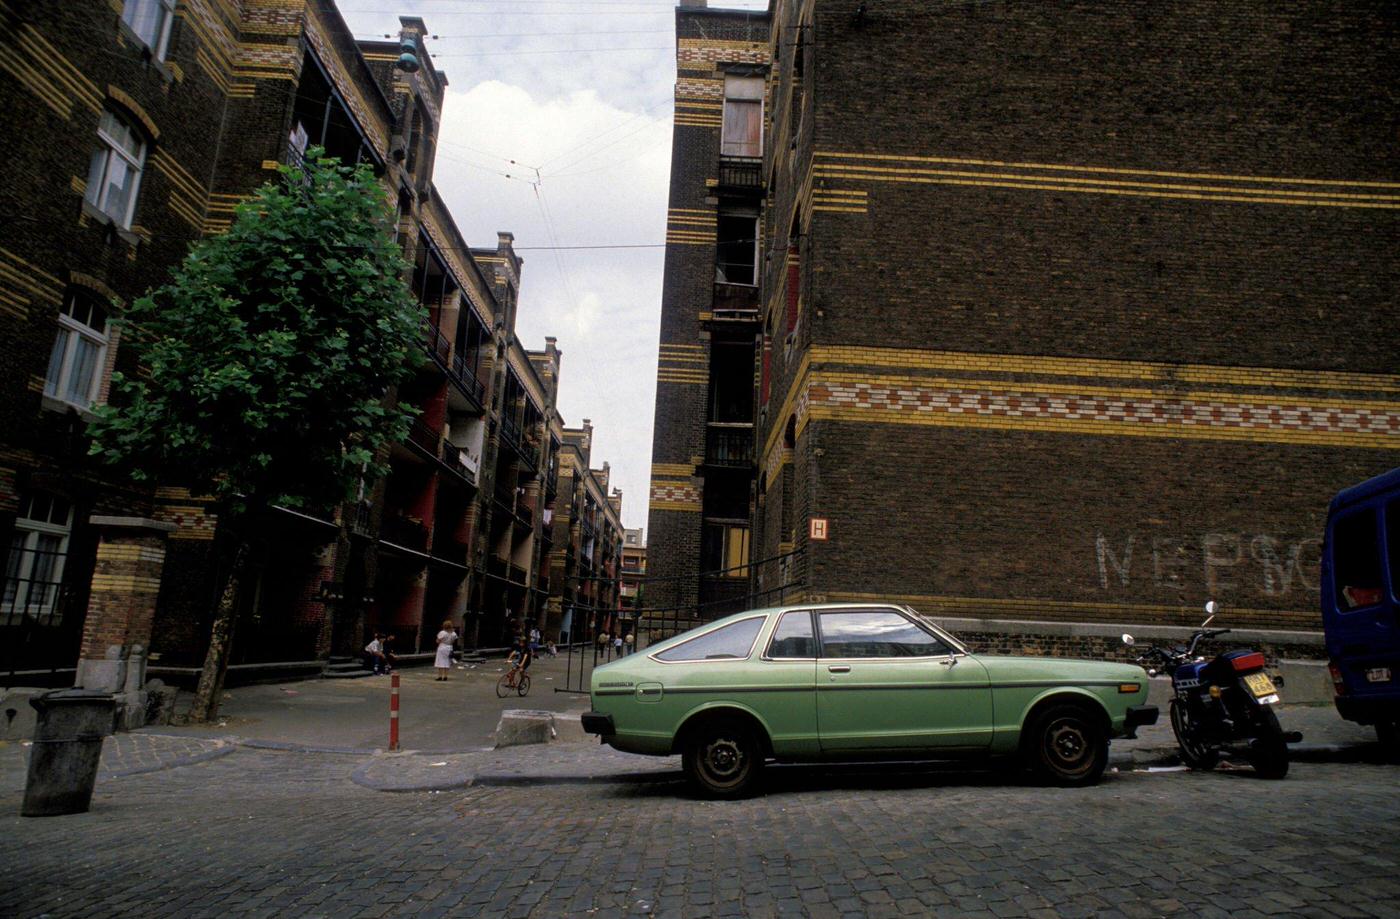 Marolles Neighborhood in Brussels, Belgium, 1986.